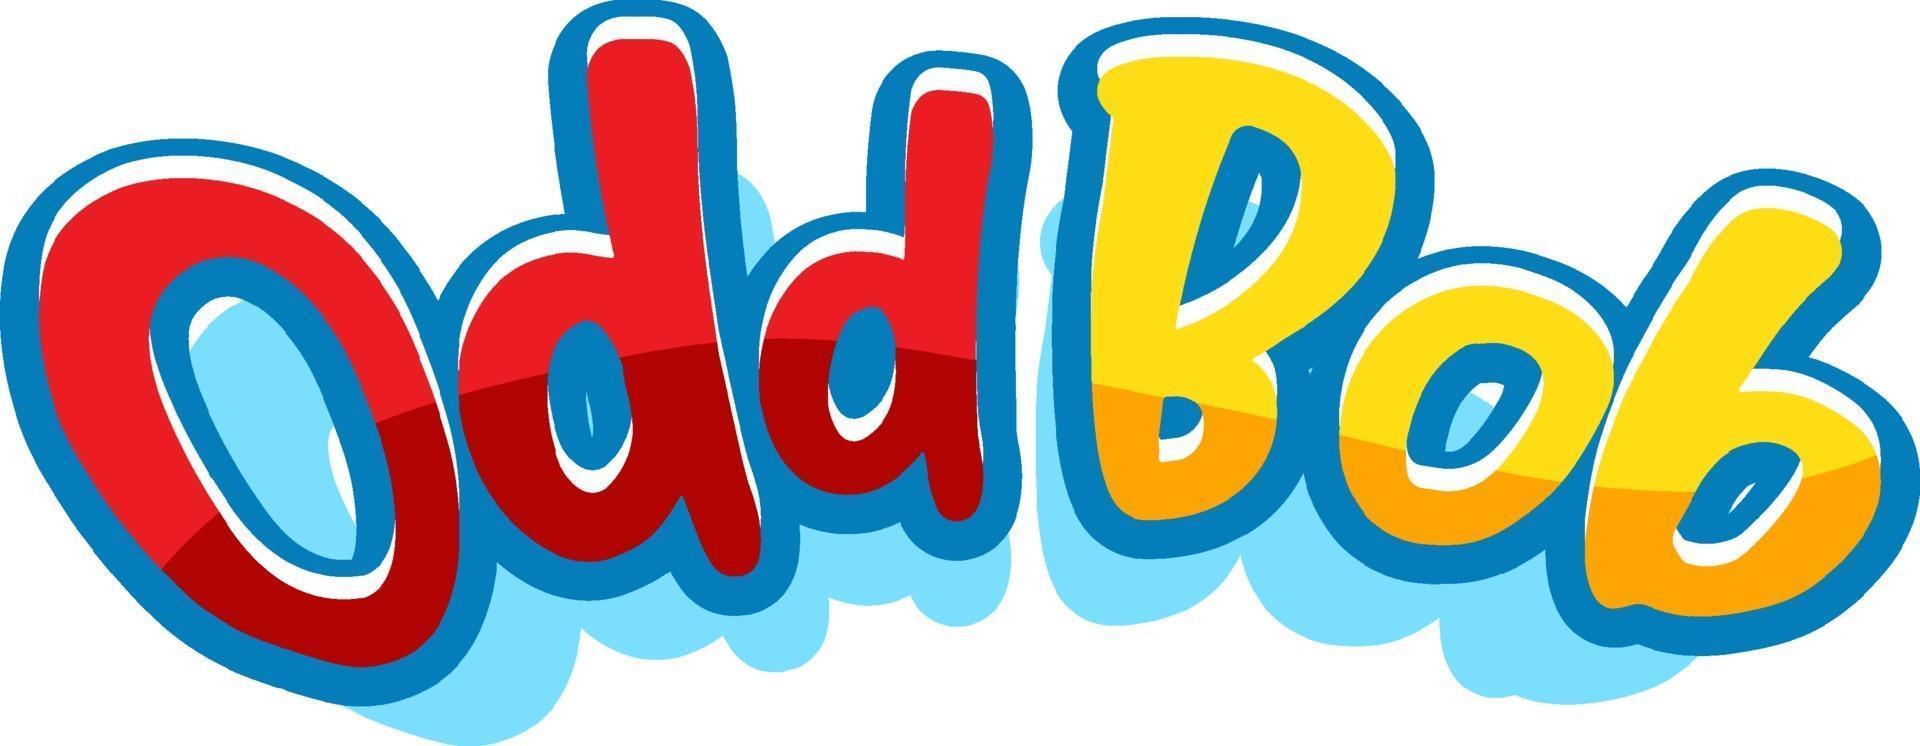 oneven bob logo lettertype ontwerp vector